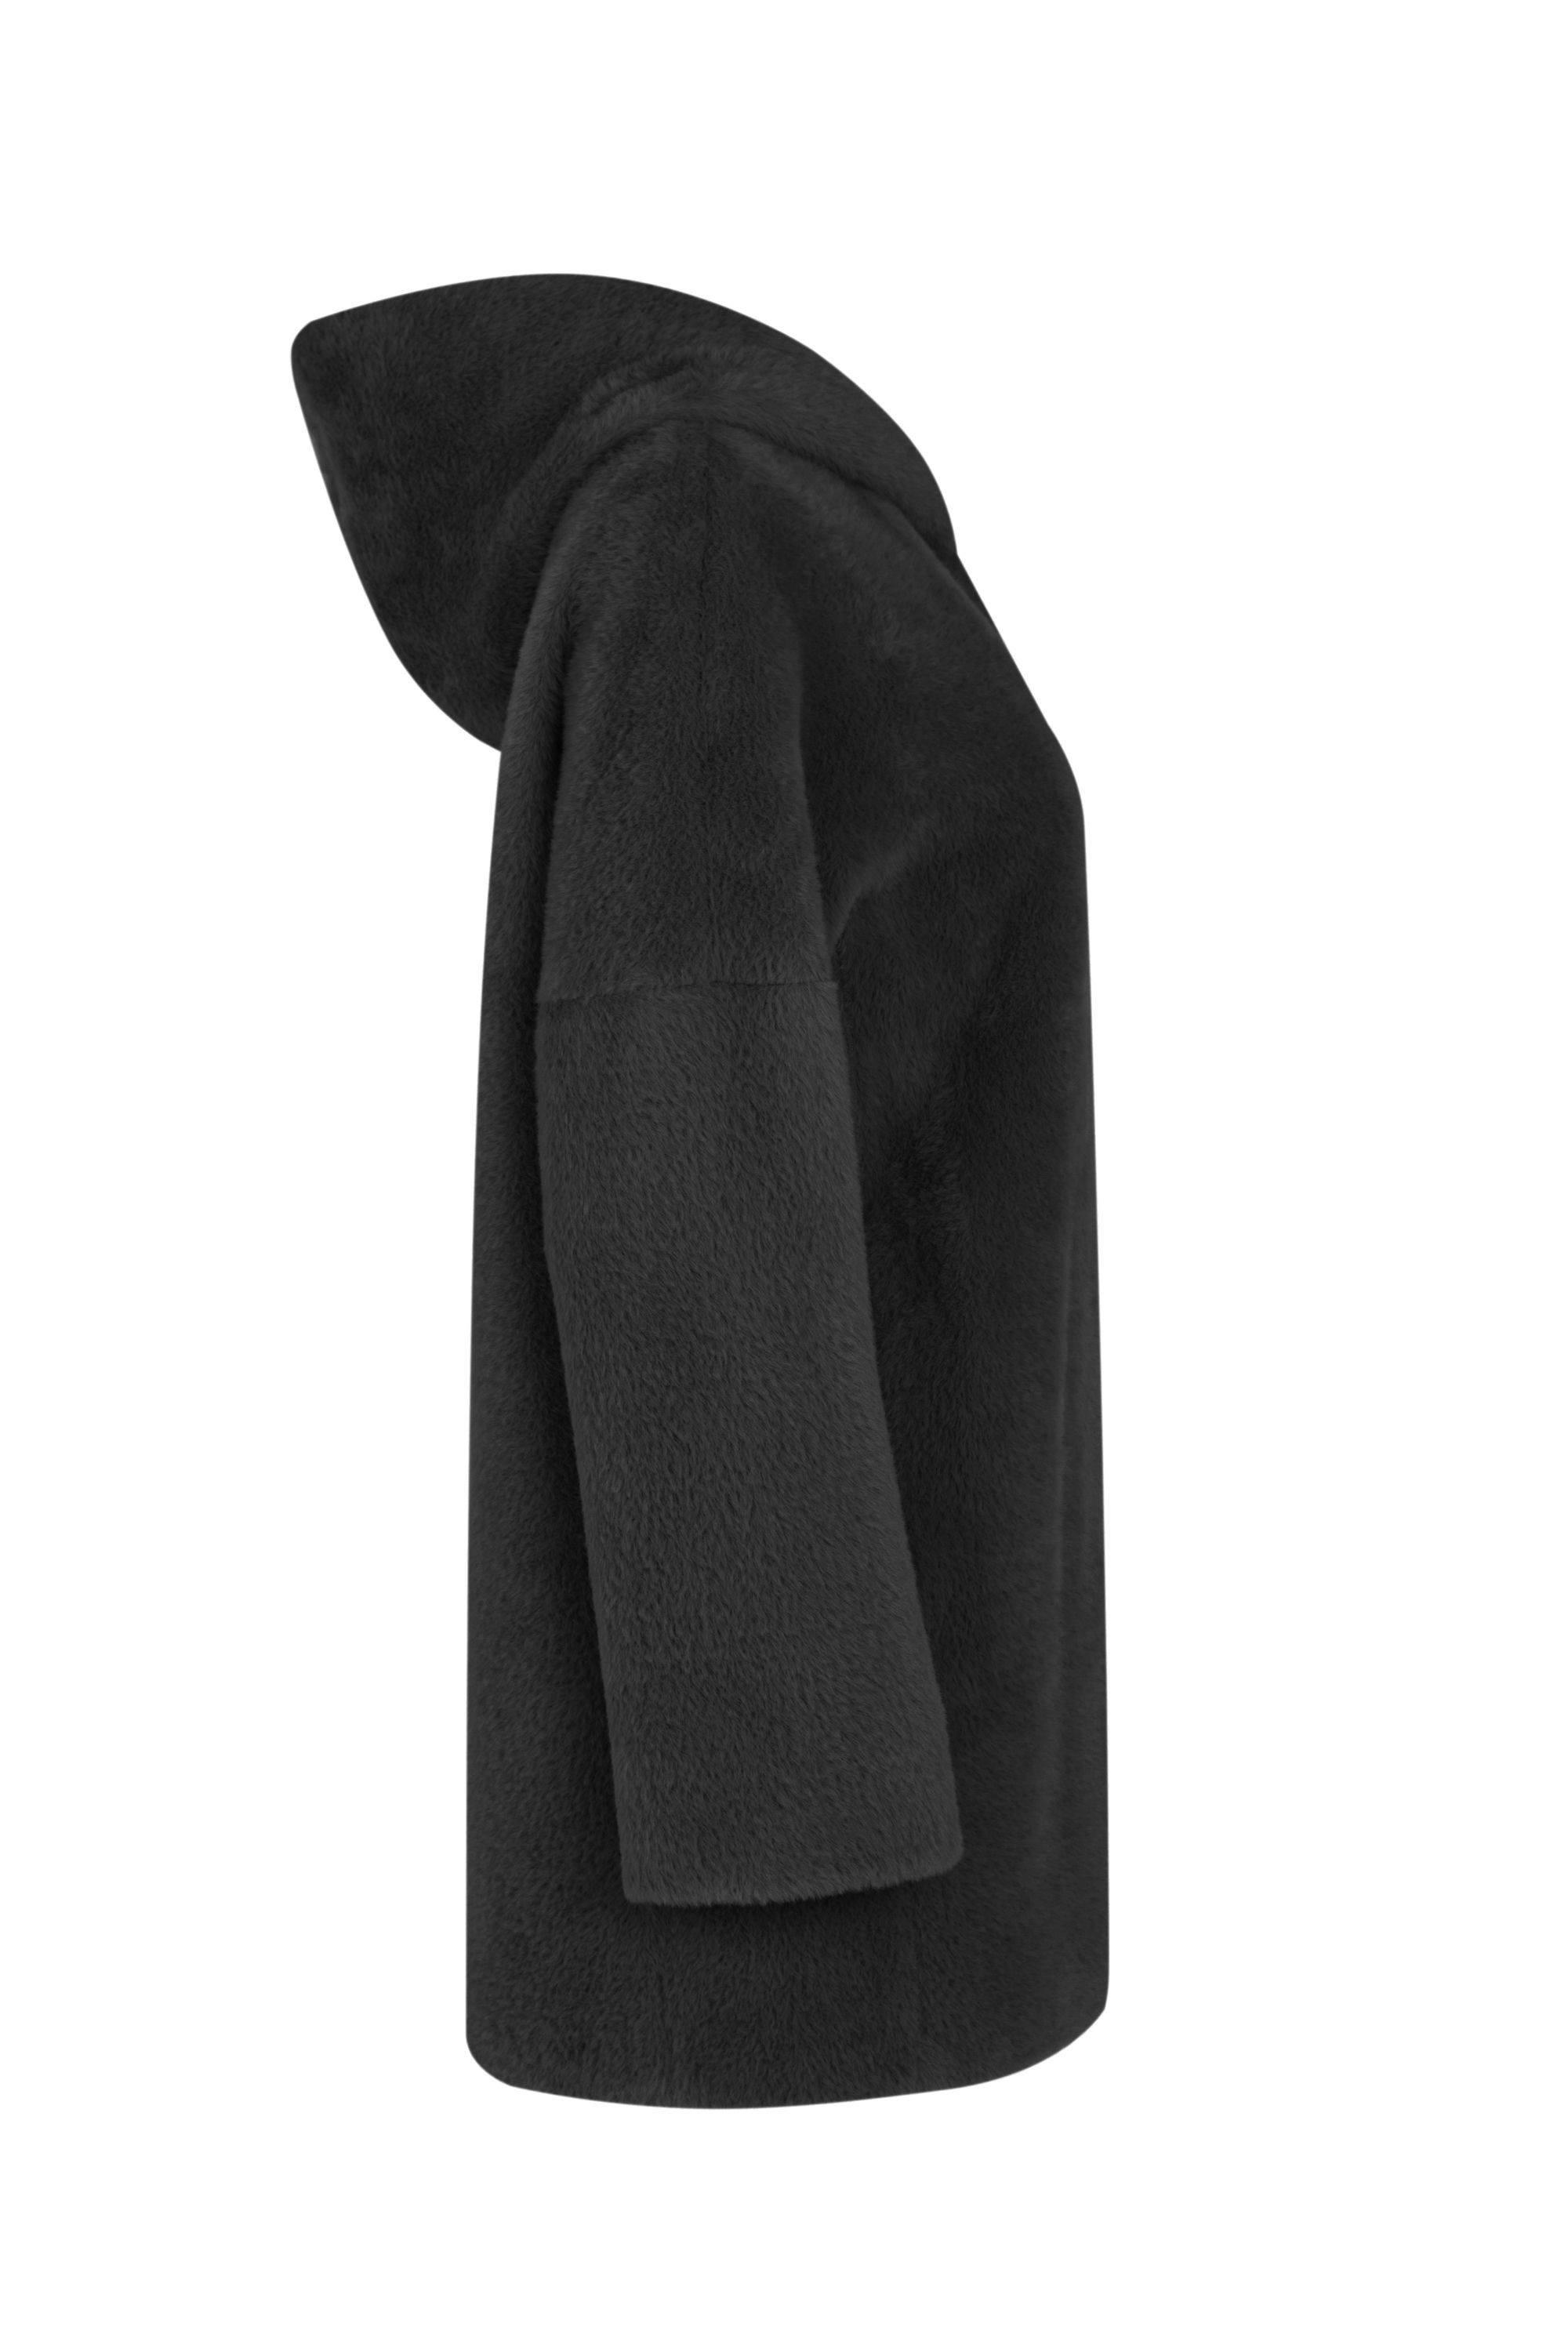 Пальто женское демисезонное 1-532